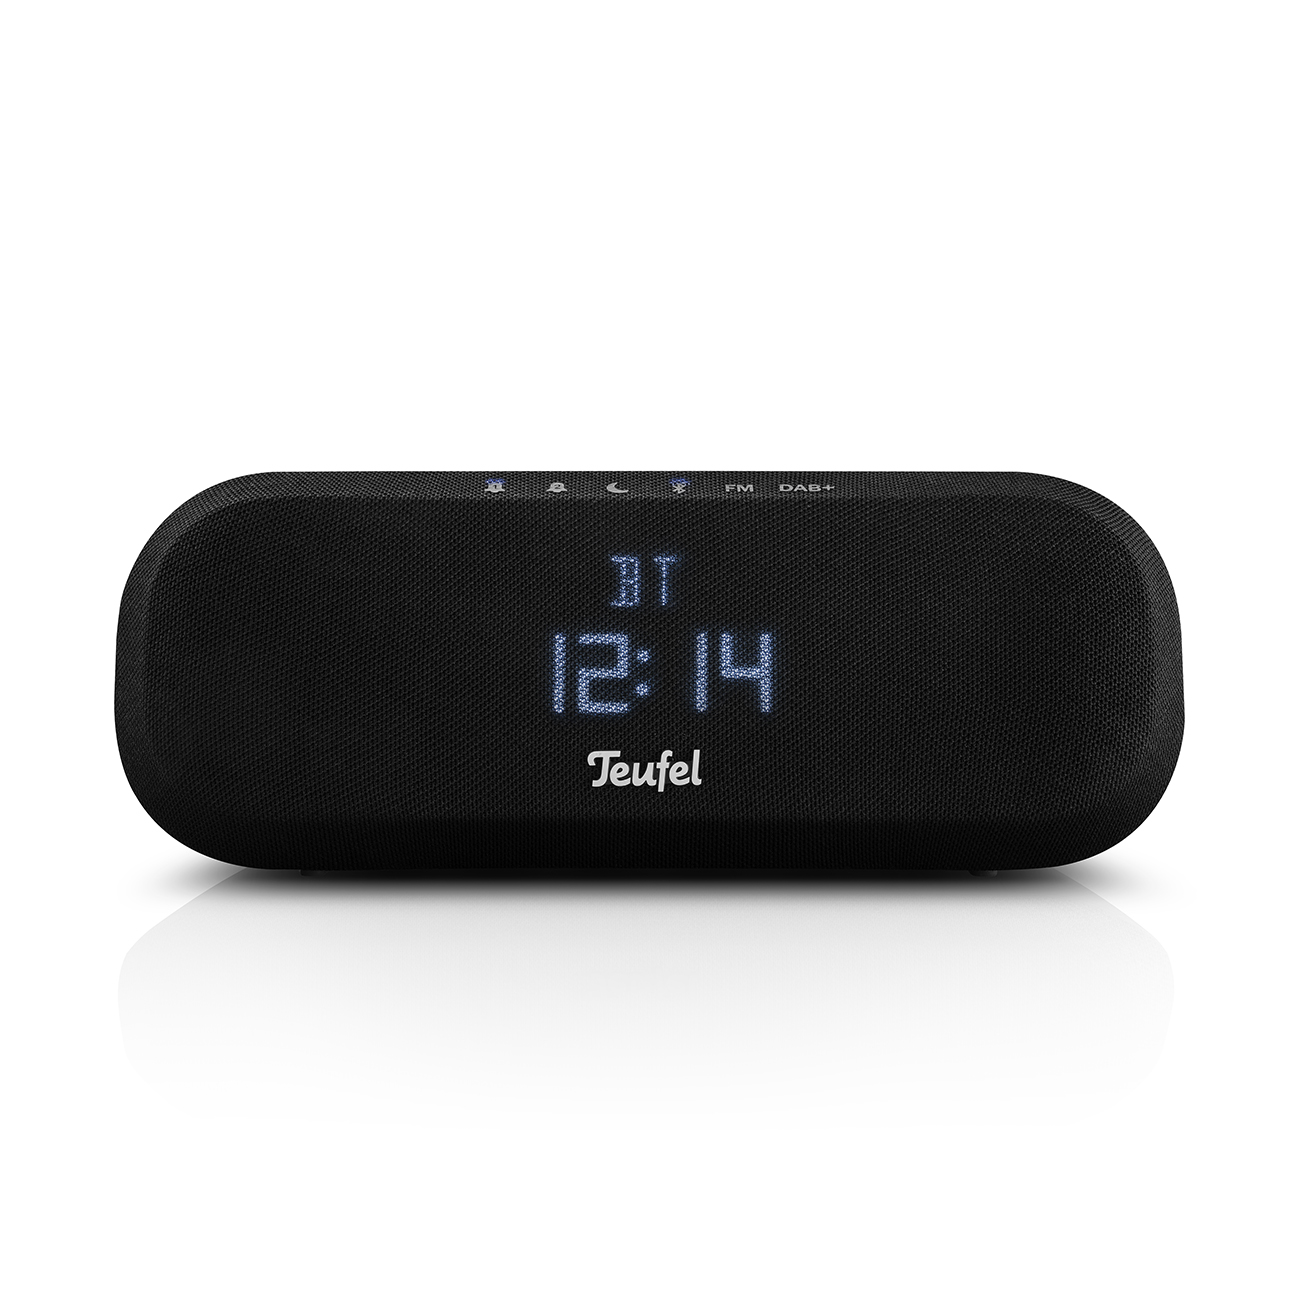 TEUFEL RADIO ONE Radio, DAB+, FM, Black Bluetooth